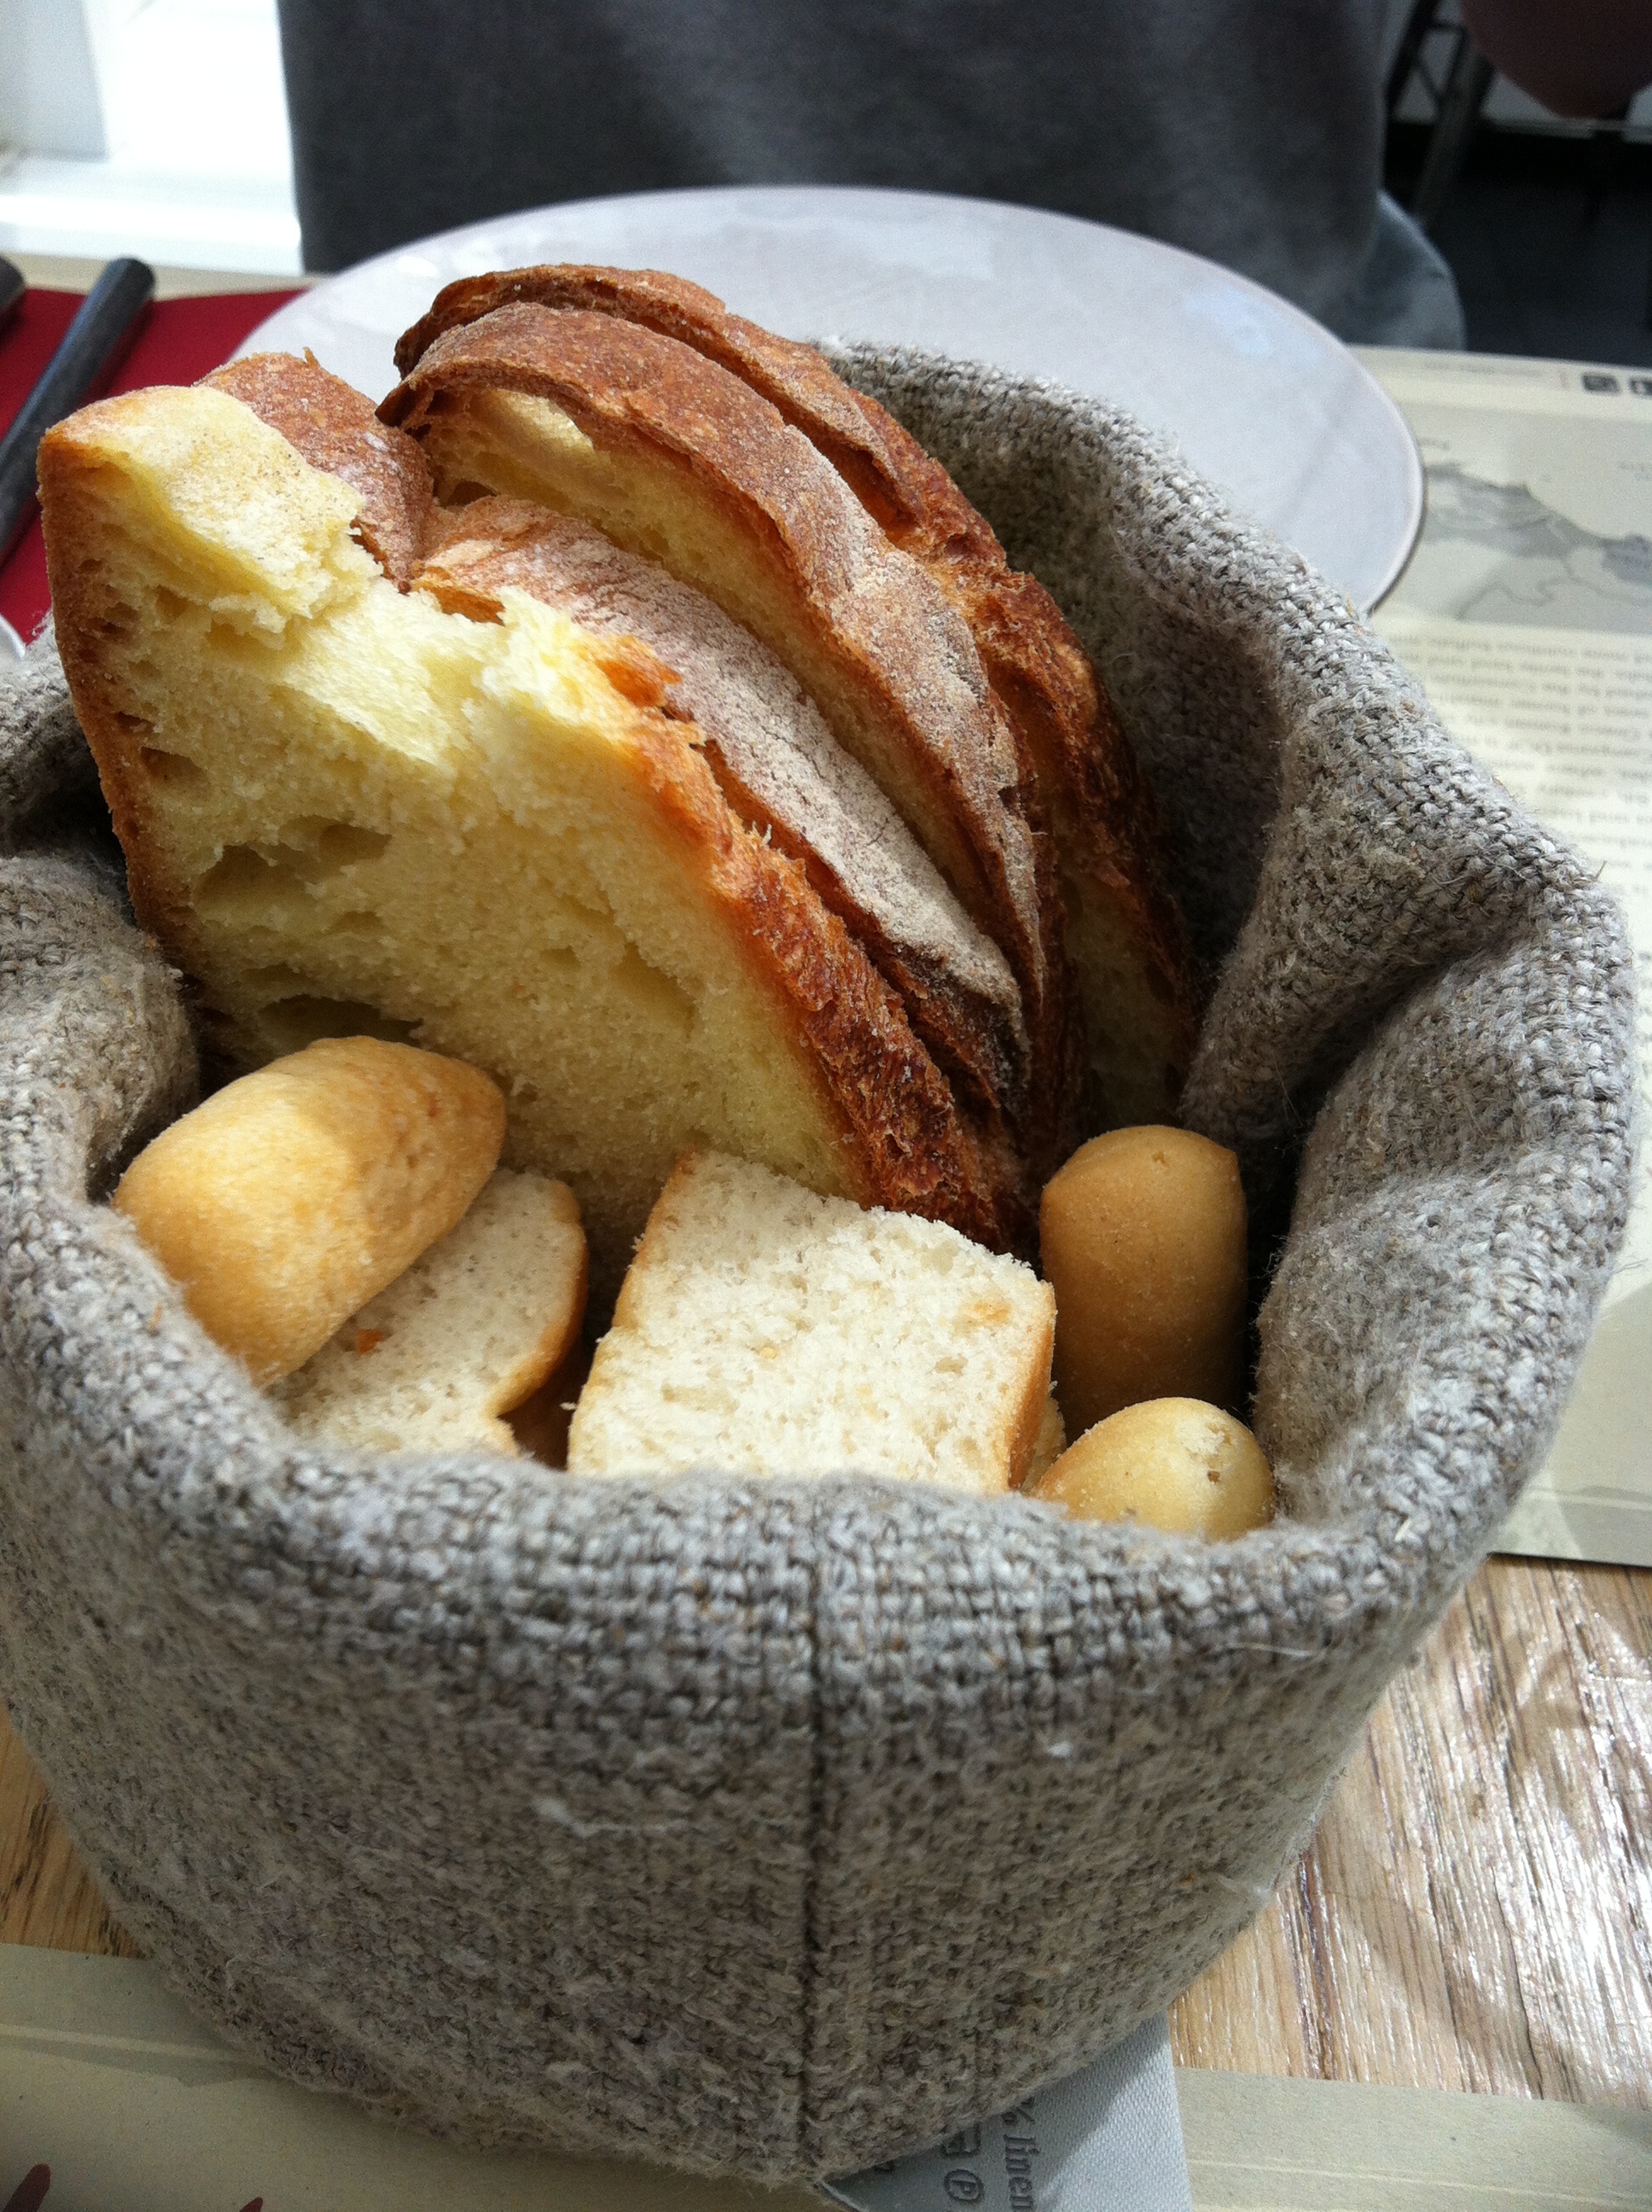 意大利的烤面包,装在田园风的小篮子里,再配上我最爱的油醋汁,每一口